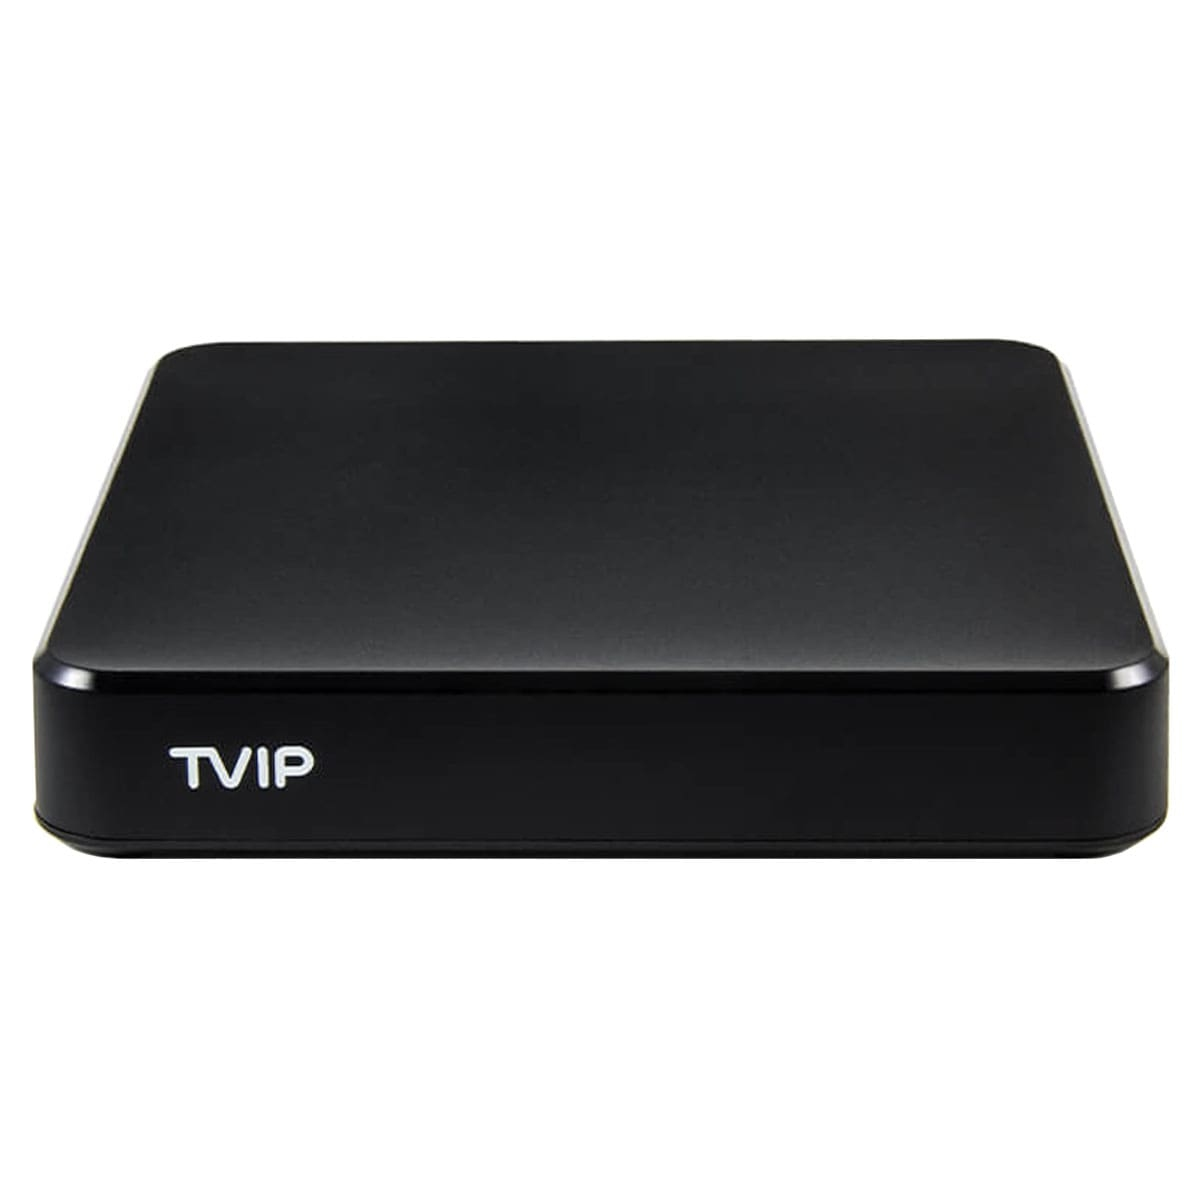 S-Box v.706 8 GB TVIP